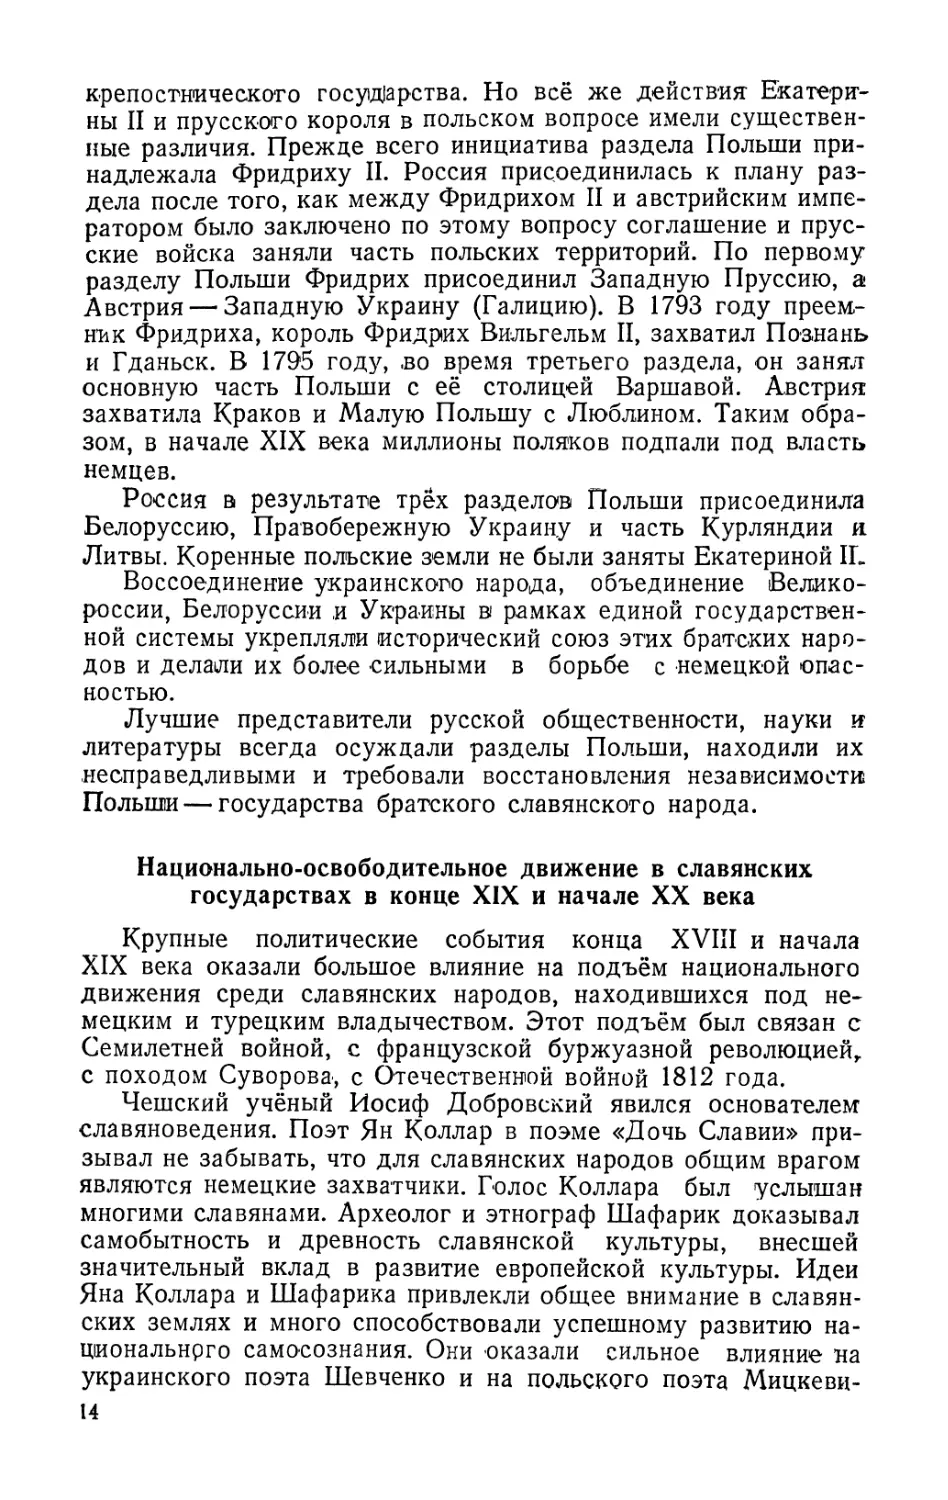 Национально-освободительное движение в славянских государствах в конце XIX и начале XX века